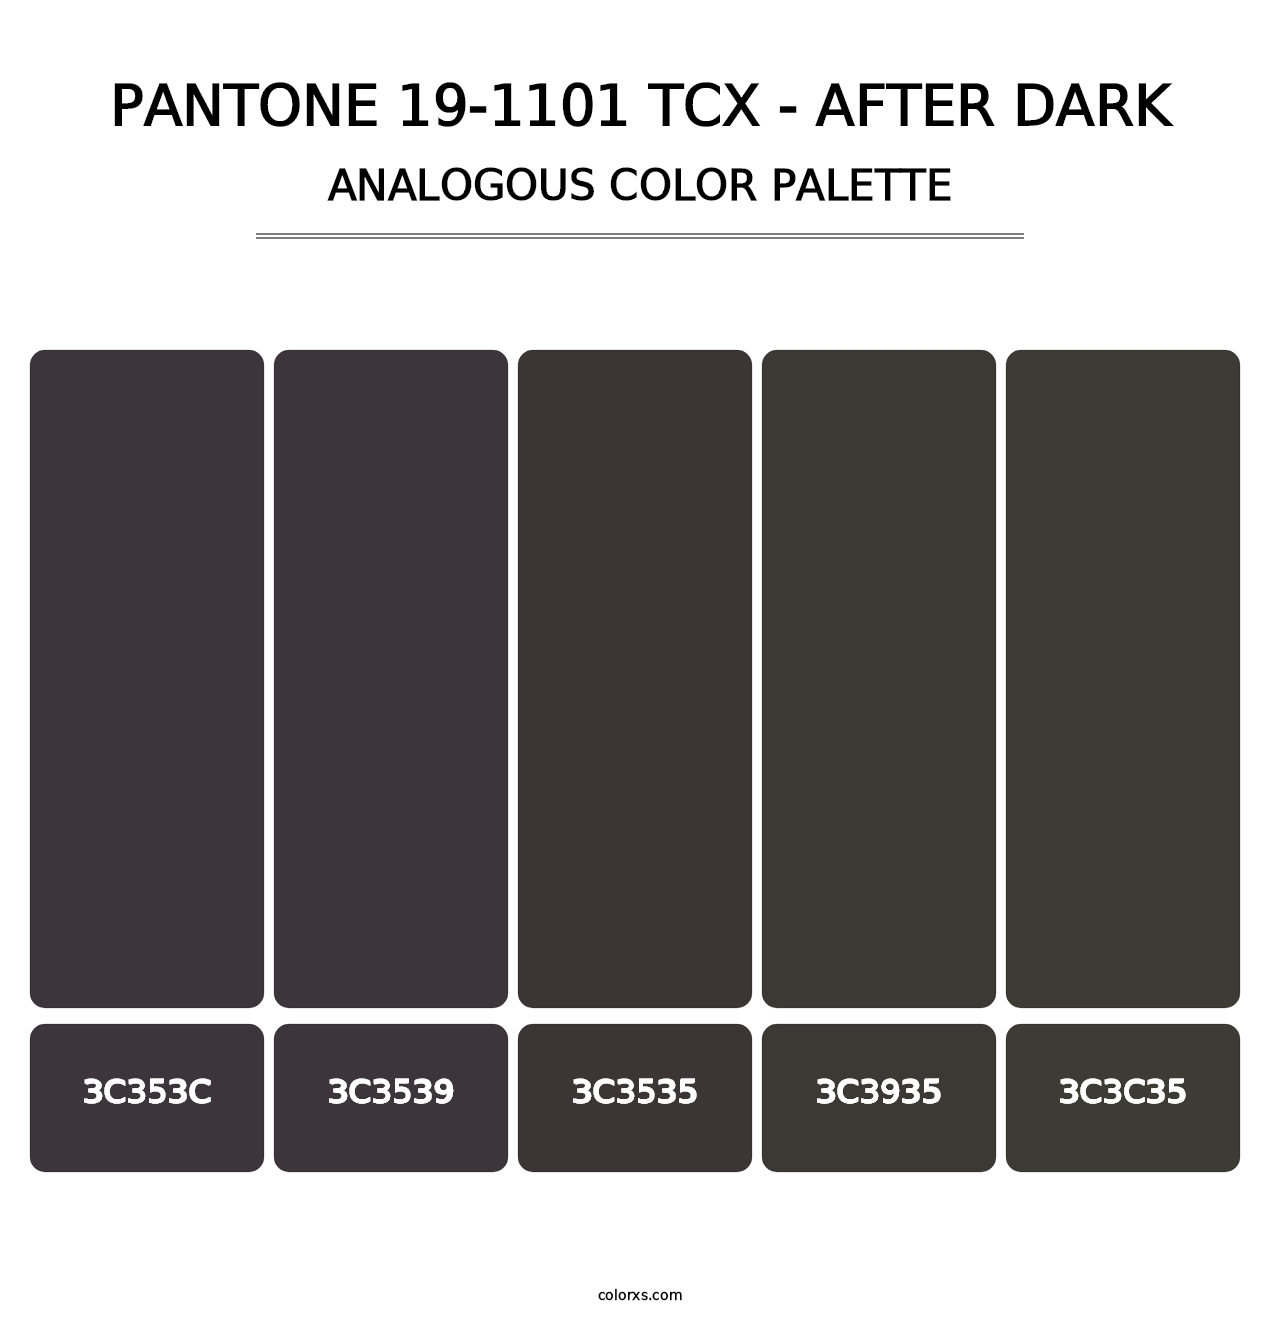 PANTONE 19-1101 TCX - After Dark - Analogous Color Palette